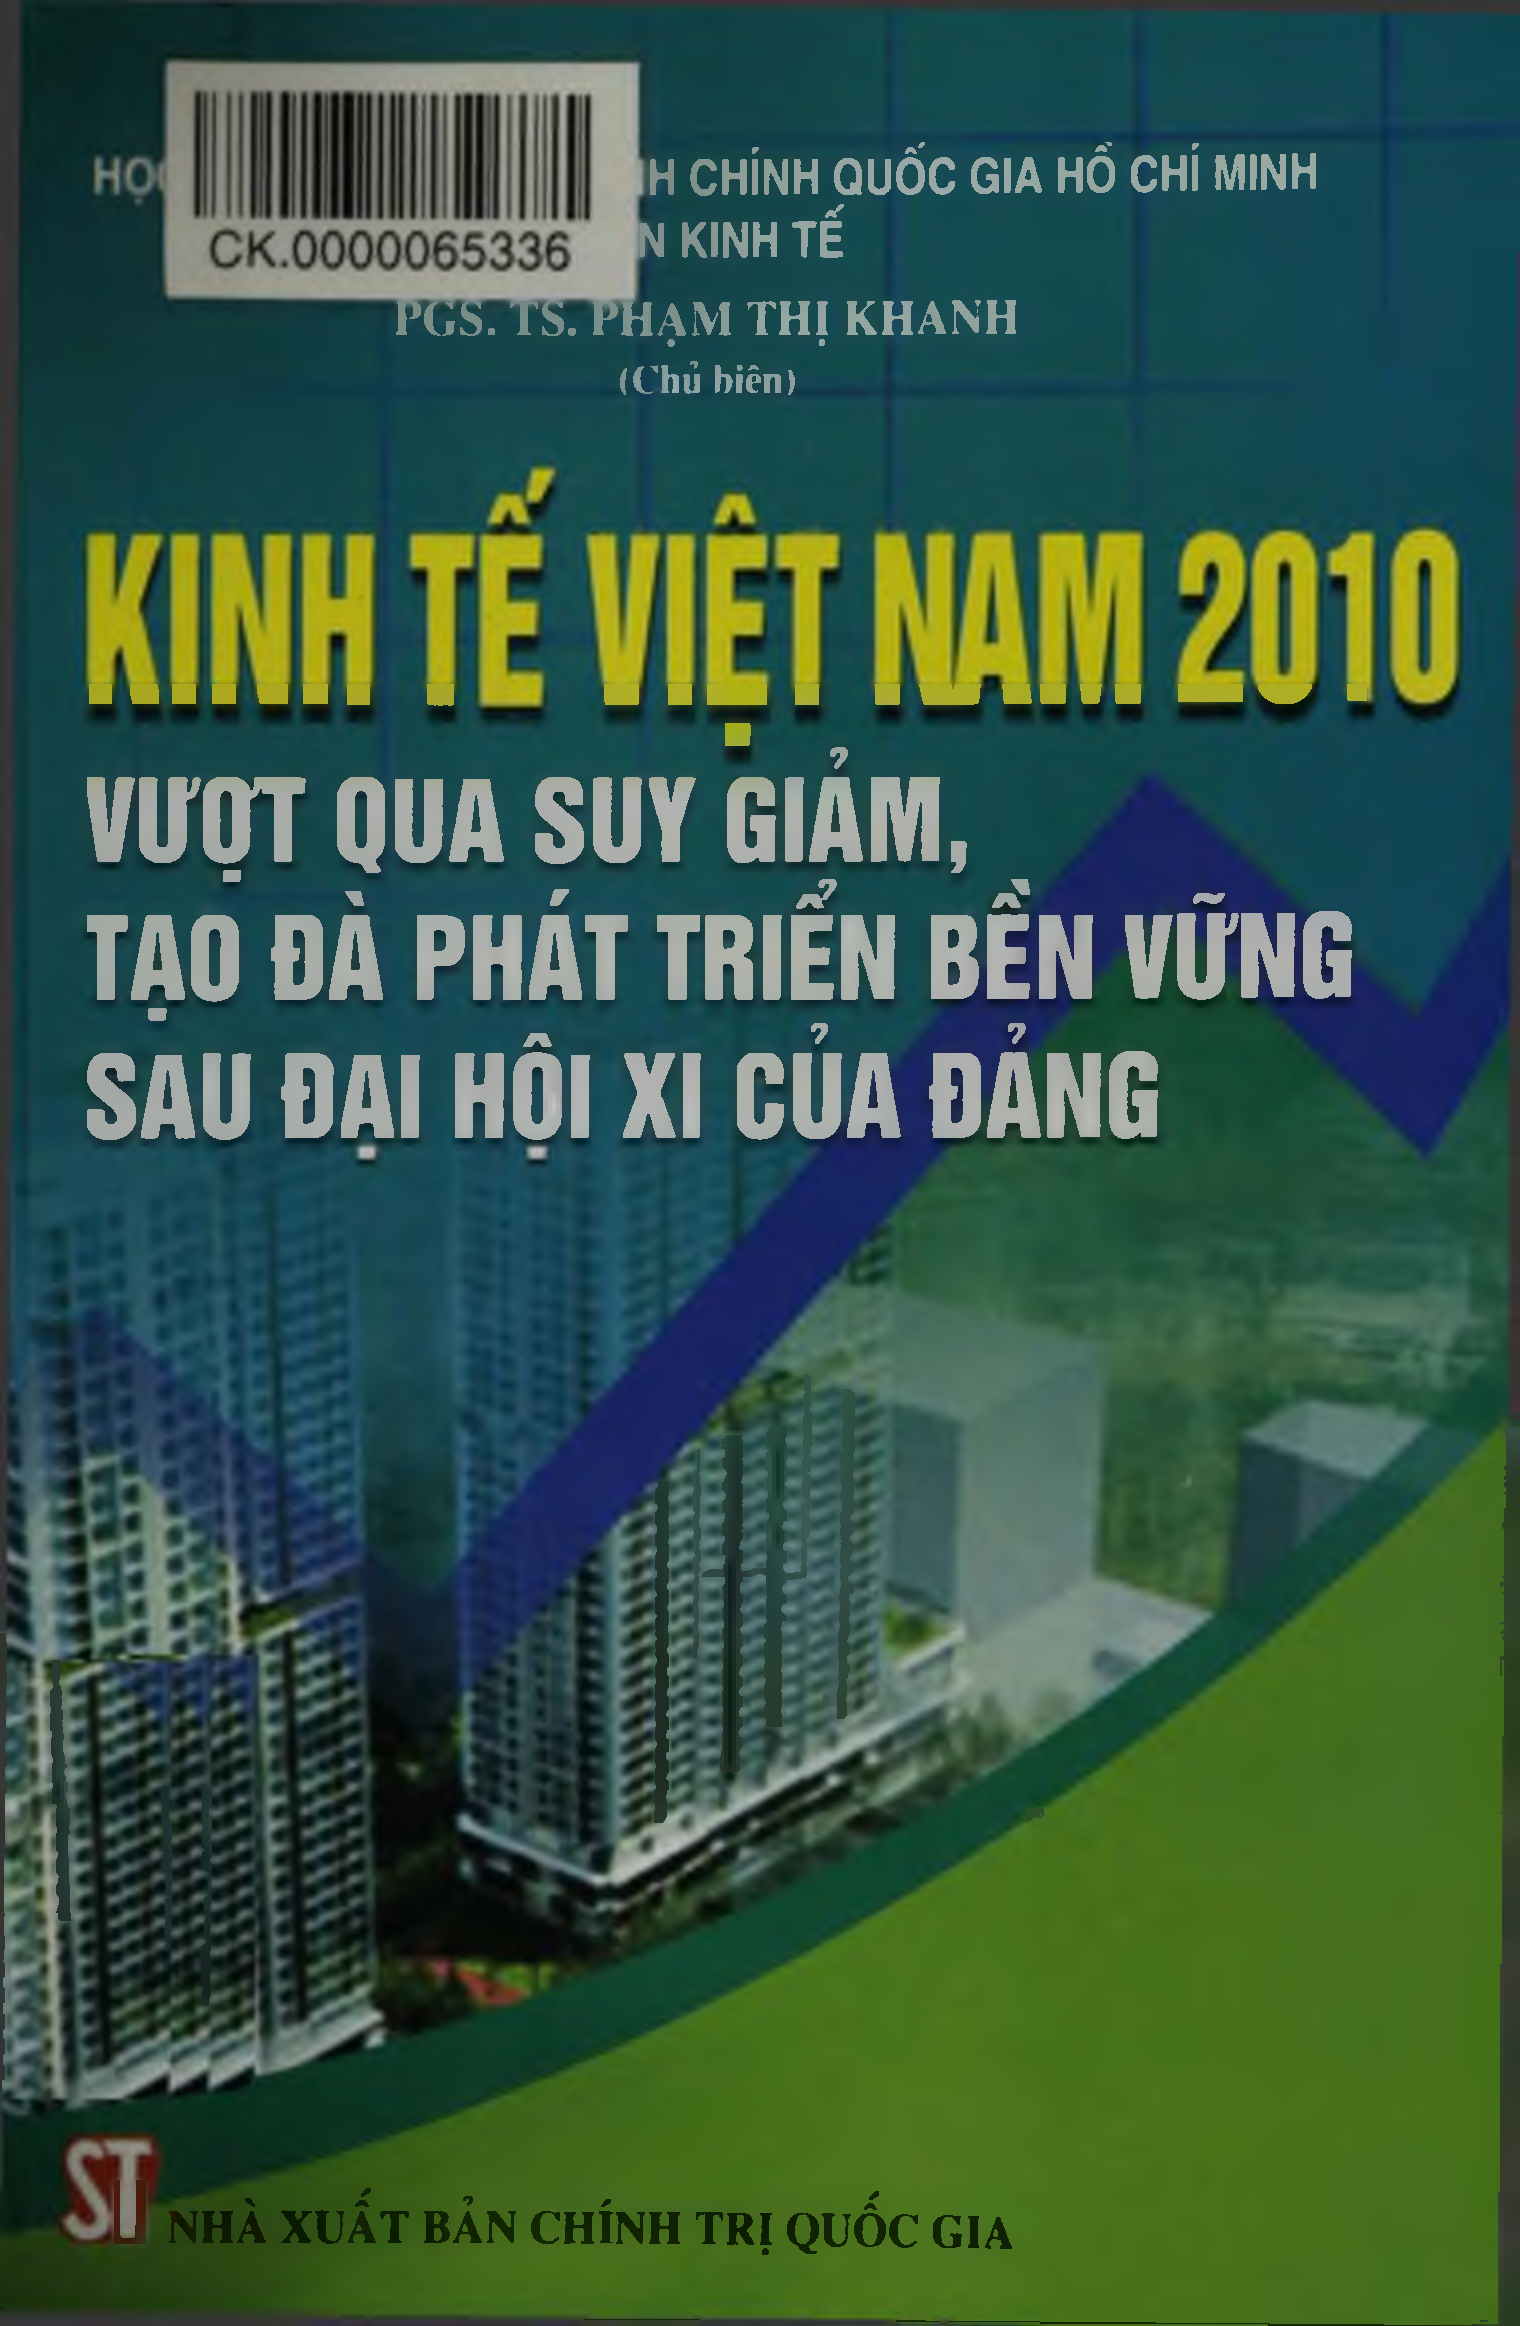 Kinh tế Việt Nam 2010 vượt qua suy giảm, tạo đà phát triển bền vững sau đại hội XI của Đảng